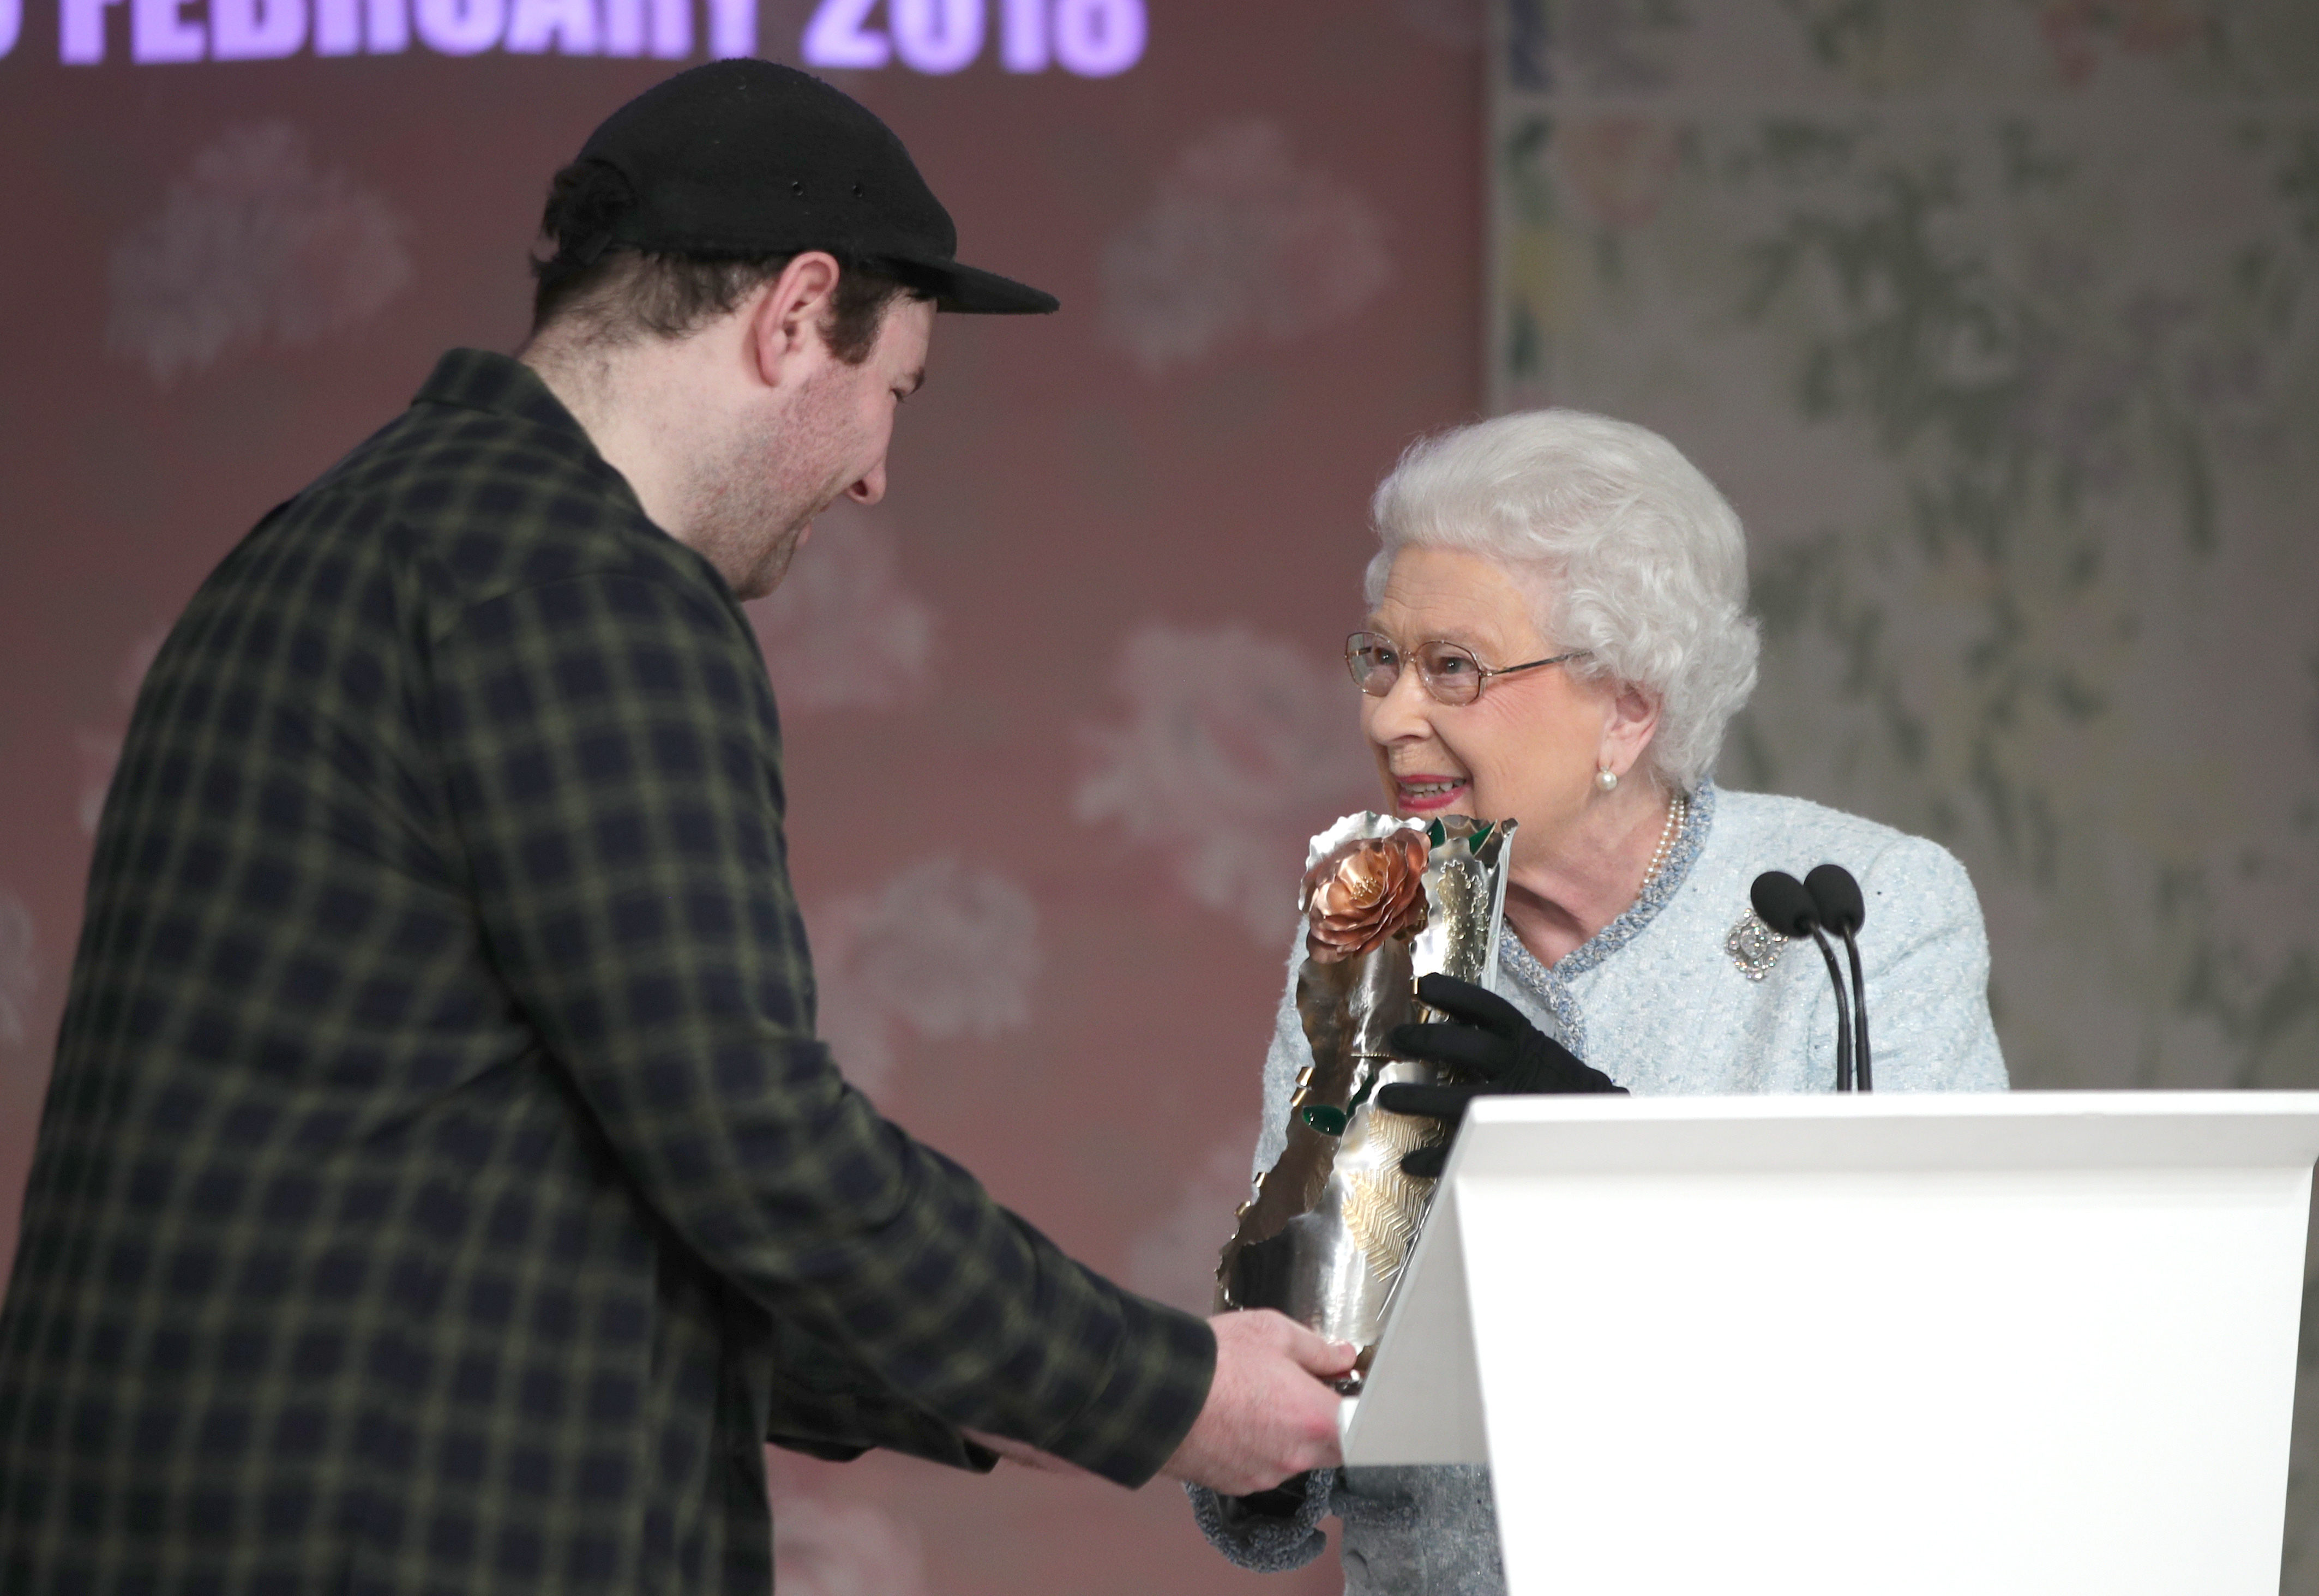 The Queen hands award to Richard Quinn